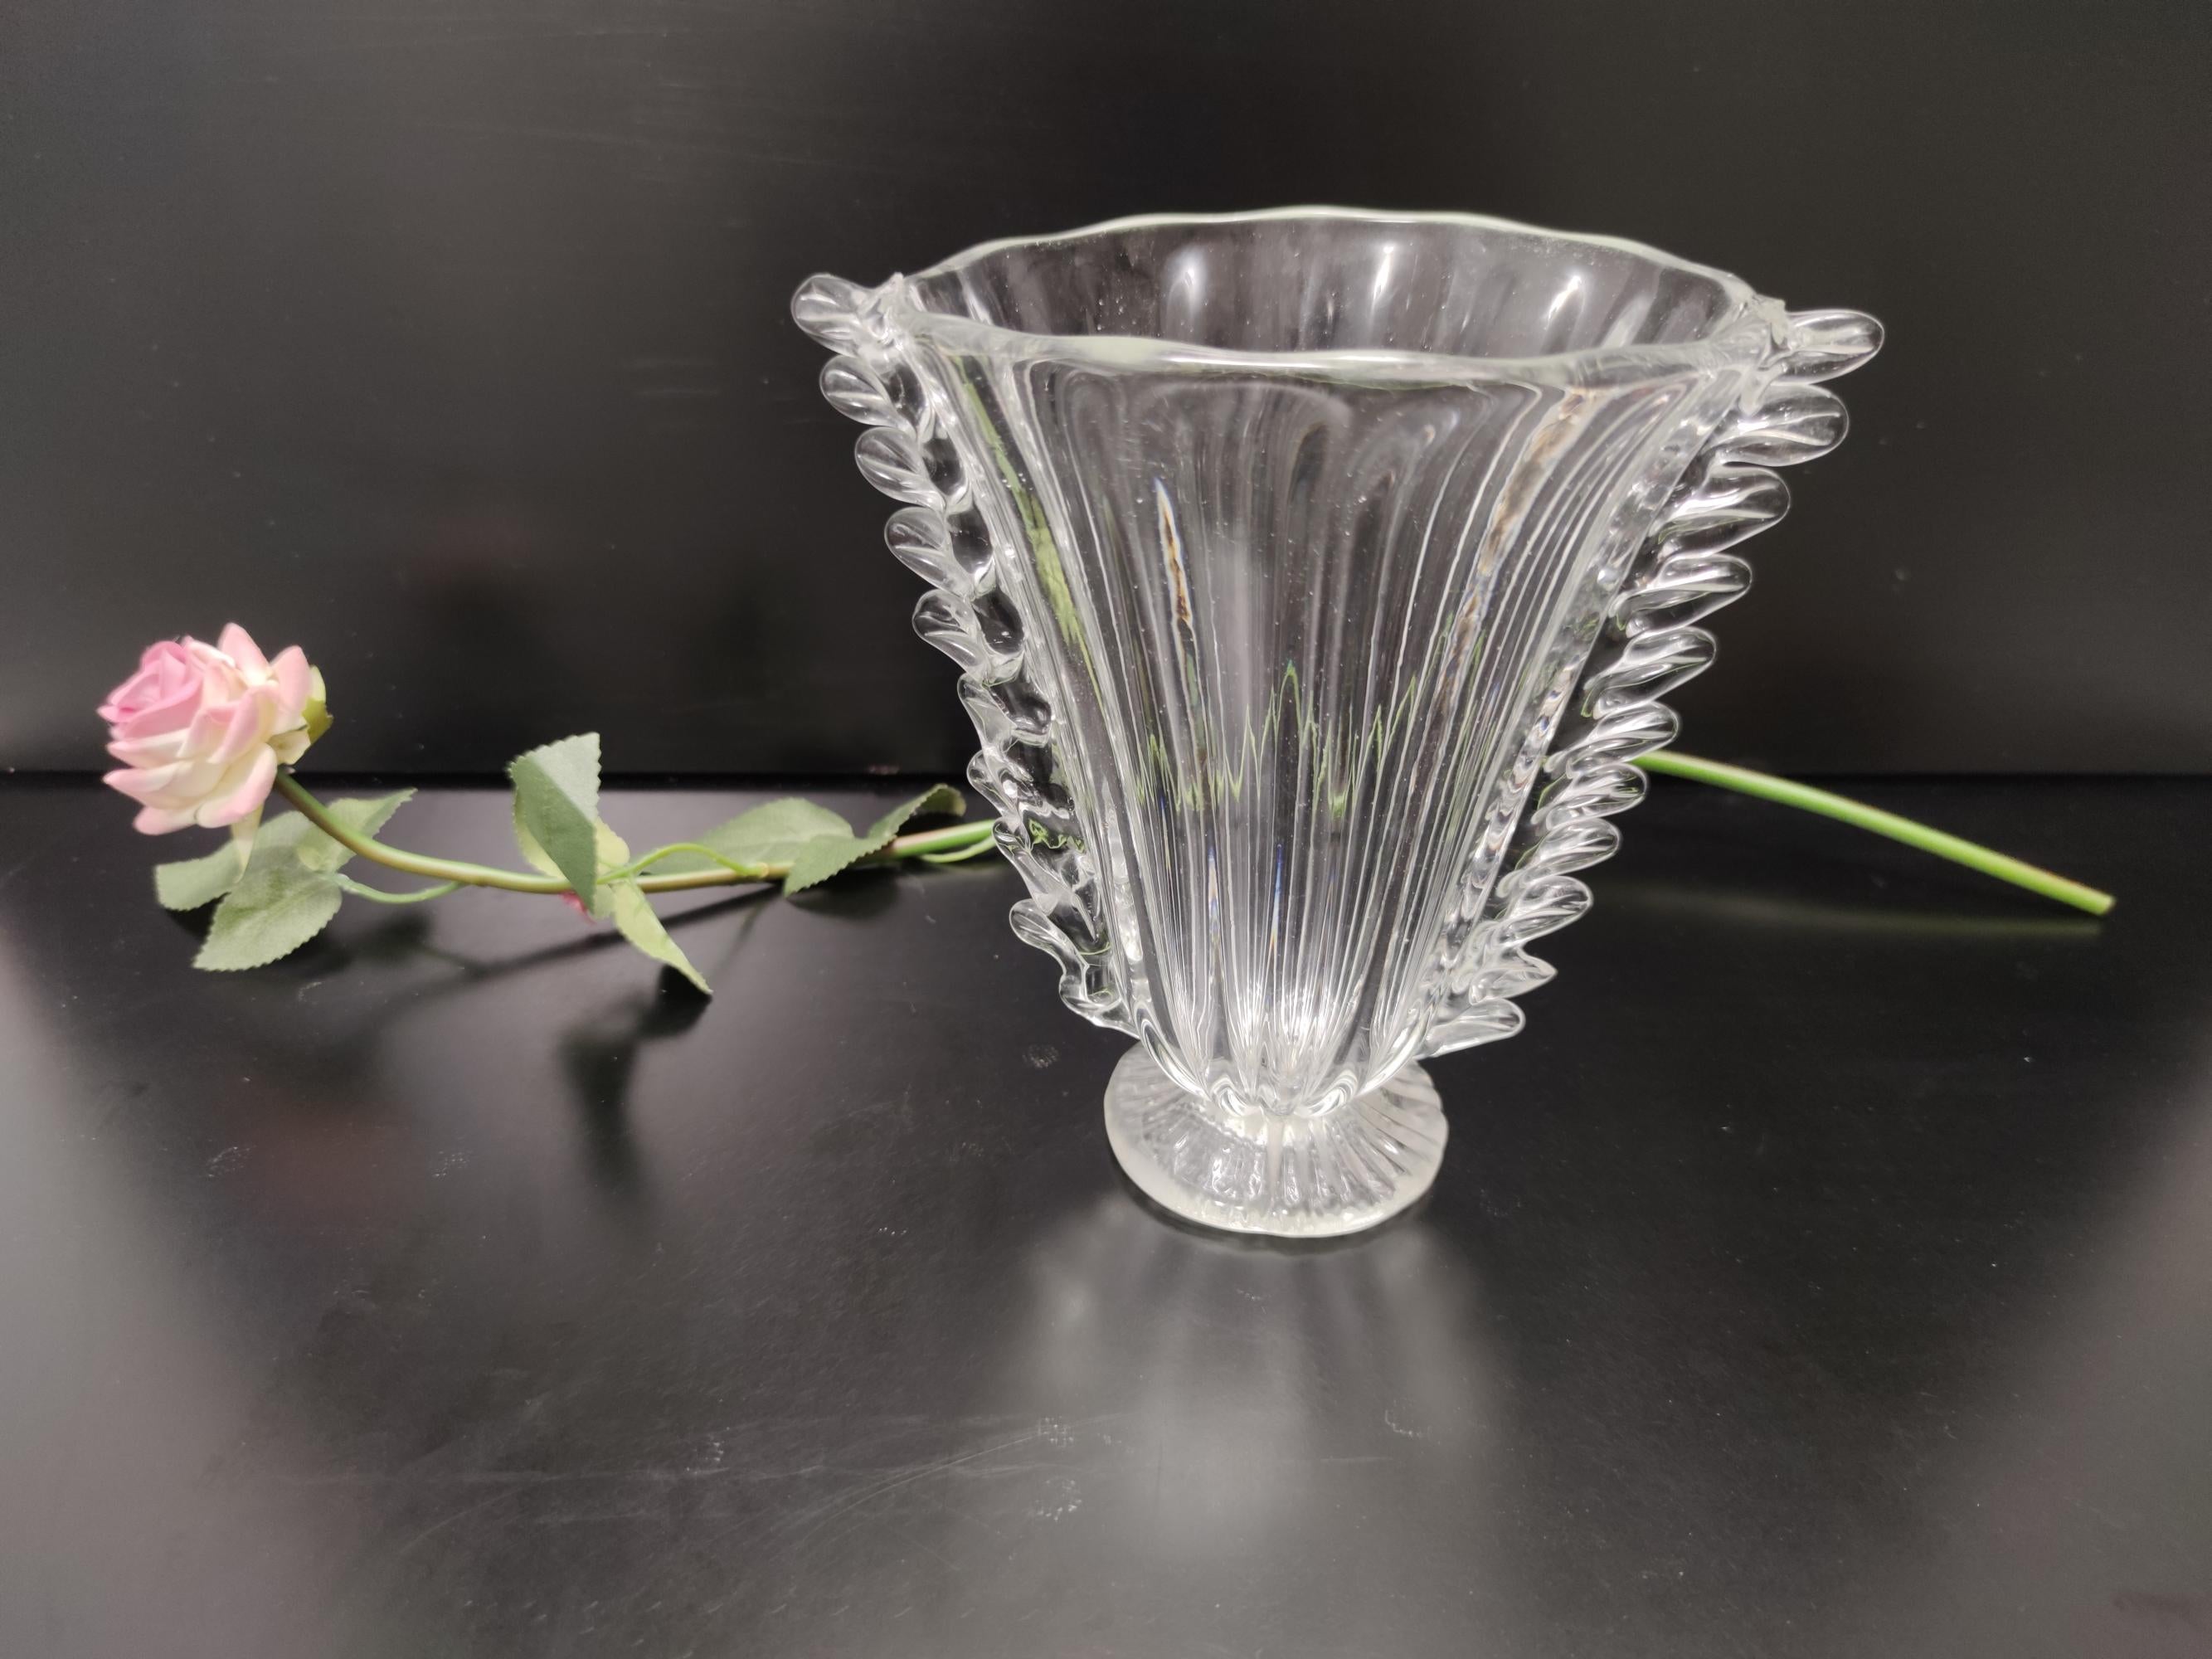 Fabriqué en Italie, années 1930-1940. 
Ce vase est fabriqué en verre de Murano soufflé à la main.
Il s'agit d'un article vintage, qui peut donc présenter de légères traces d'utilisation, mais qui peut être considéré comme étant en excellent état